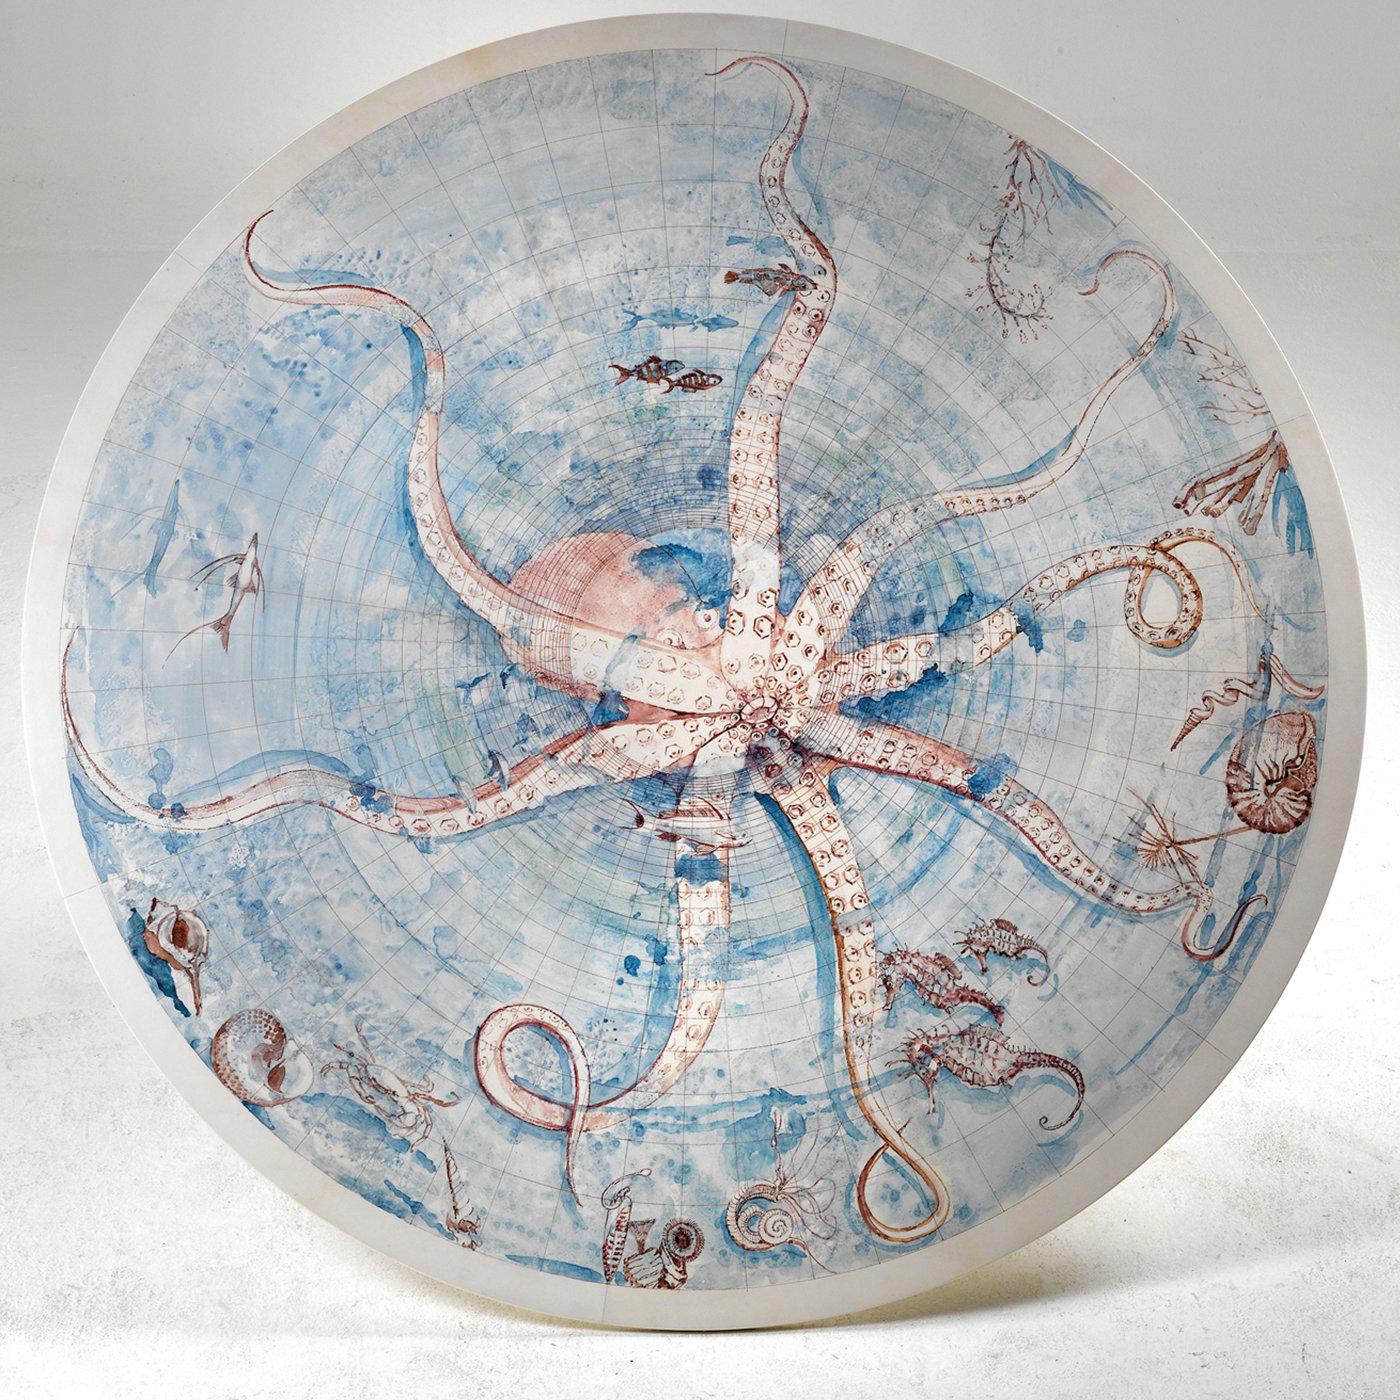 Nommée d'après le délicat motif marin peint par l'artiste romain Giancarlo Micheli sur le plateau rond en parchemin, la table Octopus est une pièce unique qui exprime pleinement la qualité de l'artisanat et la créativité de Tura. Le parchemin blanc